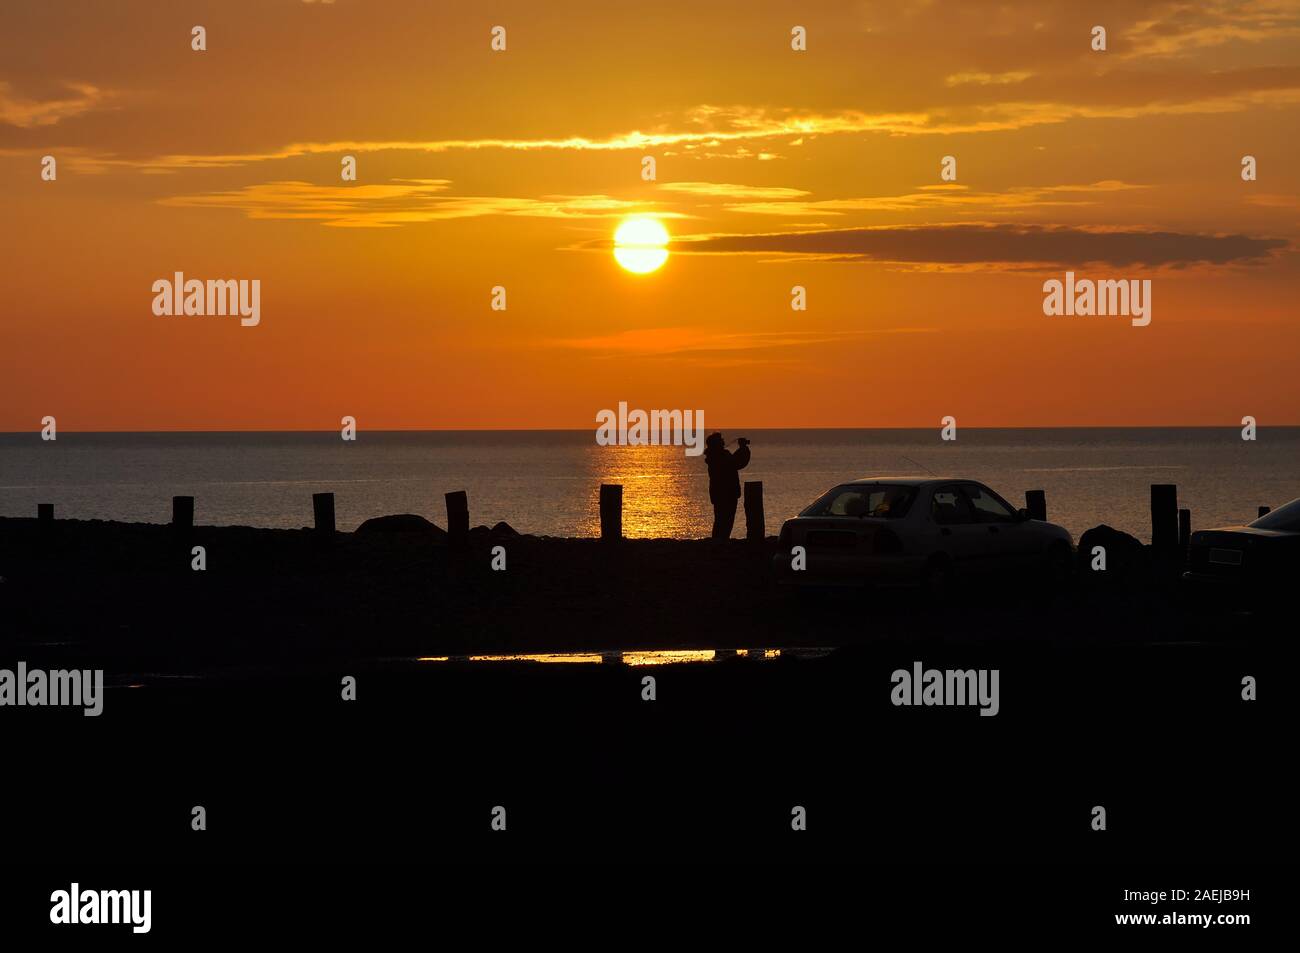 Photographe en silhouette prendre une photo d'un glorieux coucher de soleil sur la mer d'Irlande à Aberystwyth Ceredigion Pays de Galles UK Banque D'Images